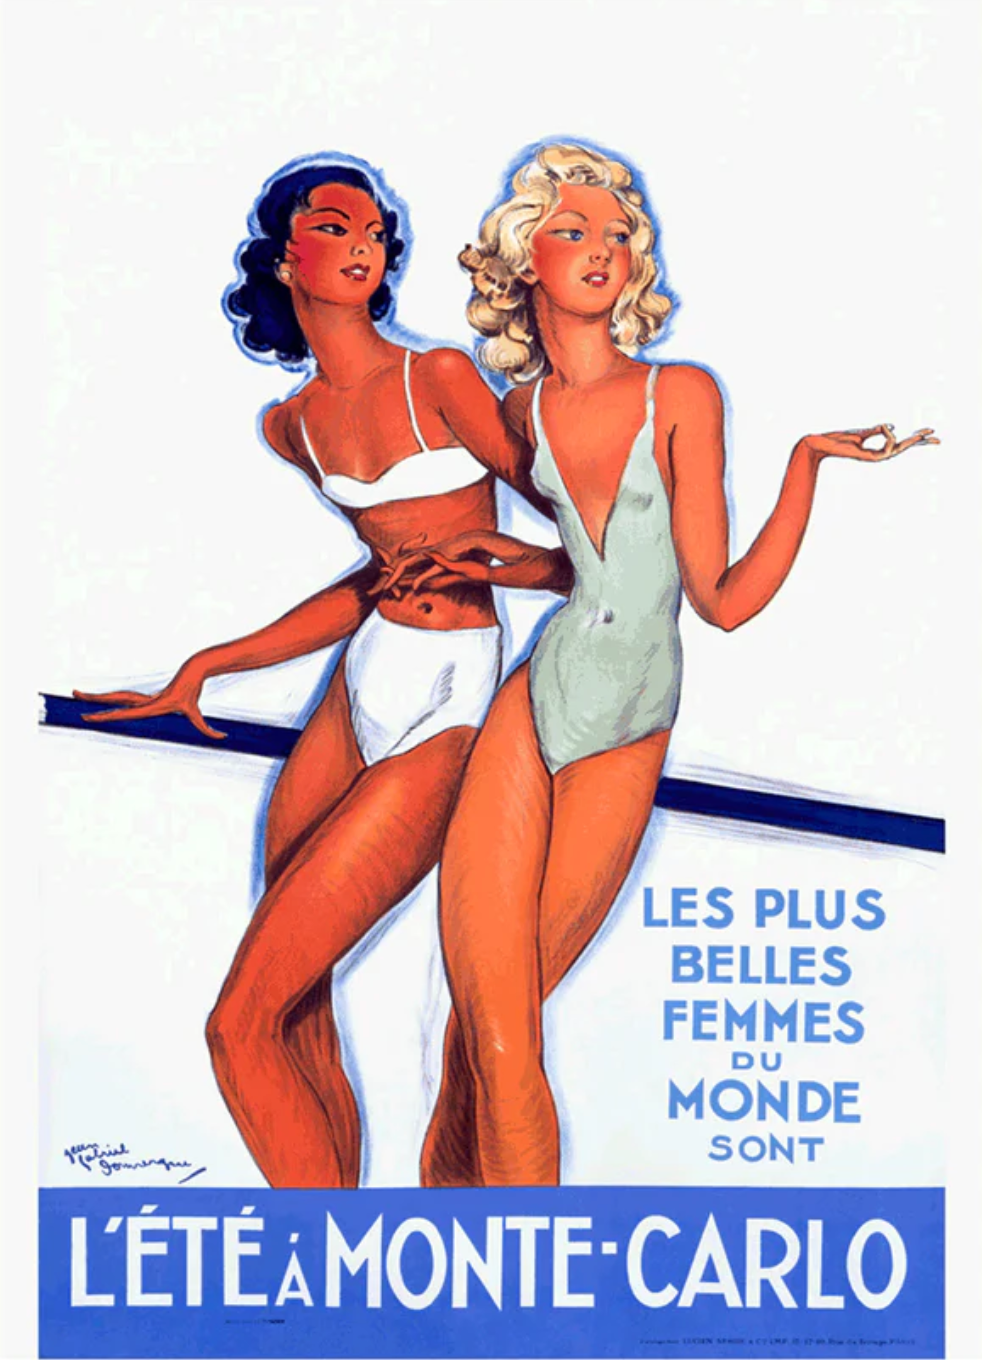 Les Plus Belles Femmes by Jean-Gabriel Domergue